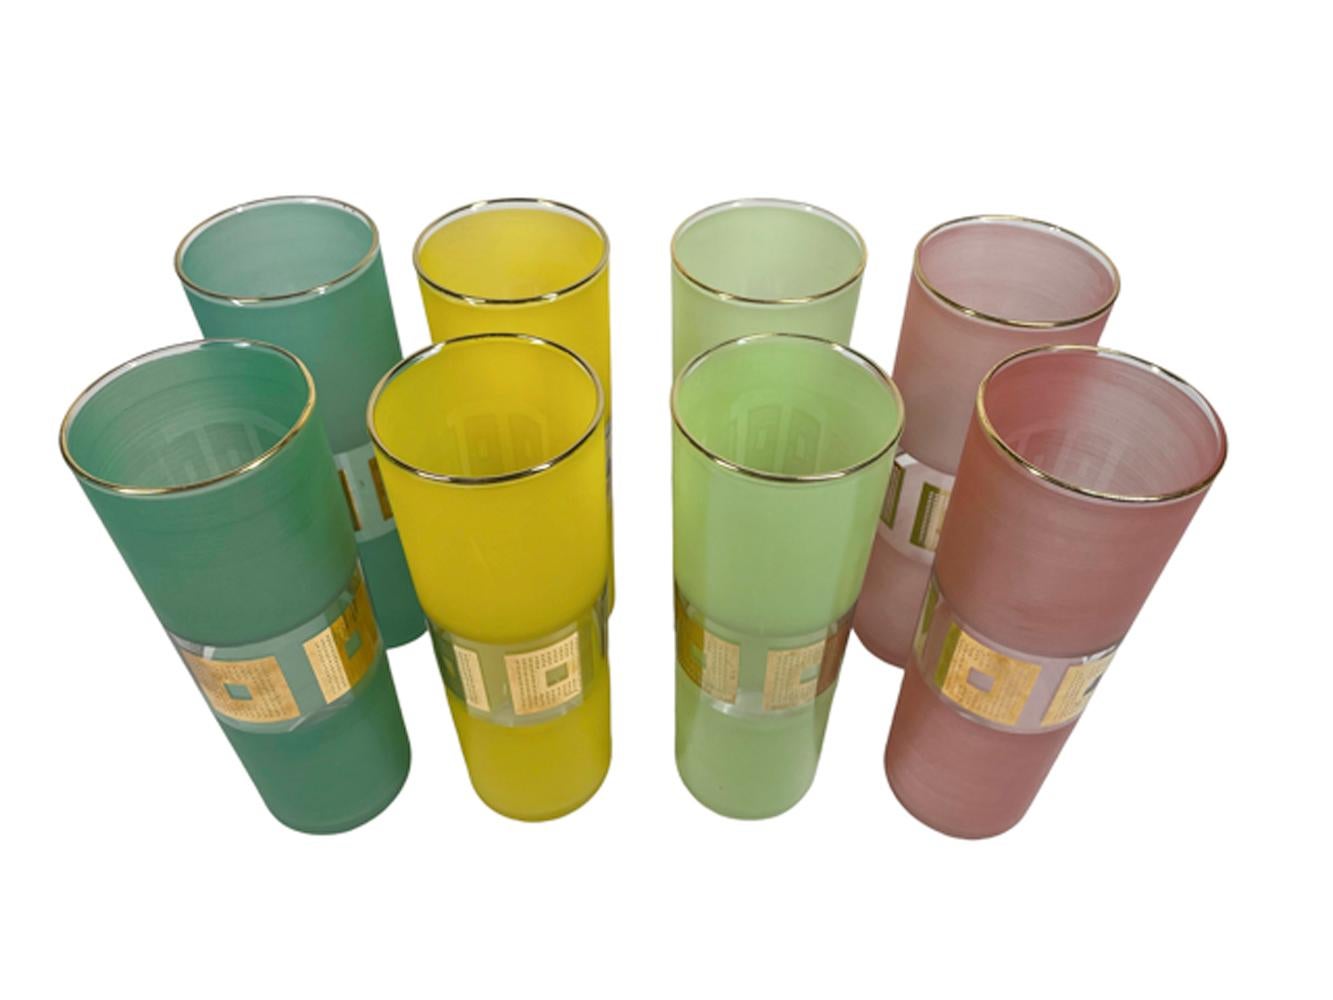 Huit verres Tom Collins de Bartlett-Collins, modernes et du milieu du siècle, avec des côtés givrés, dans deux couleurs : sarcelle, jaune, rose et citron vert. Chaque verre comporte une réserve transparente au milieu de laquelle se trouvent des